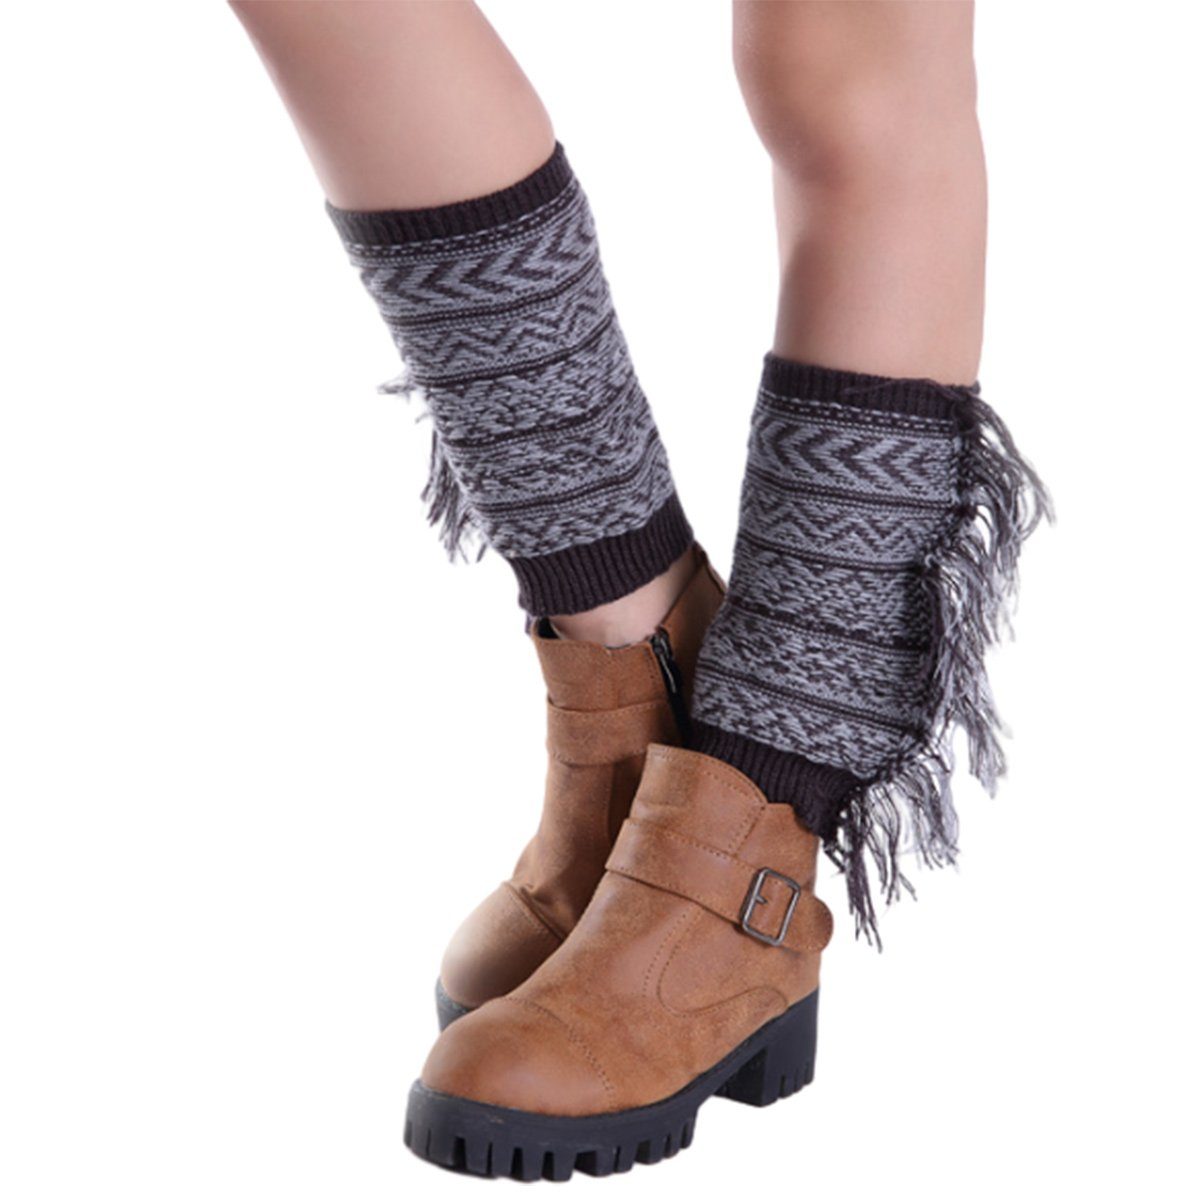 Jormftte Beinstulpen Damen Strick-Beinstulpen Stiefelstulpen Socken Kurze Stiefelsocken Dunkelgrau